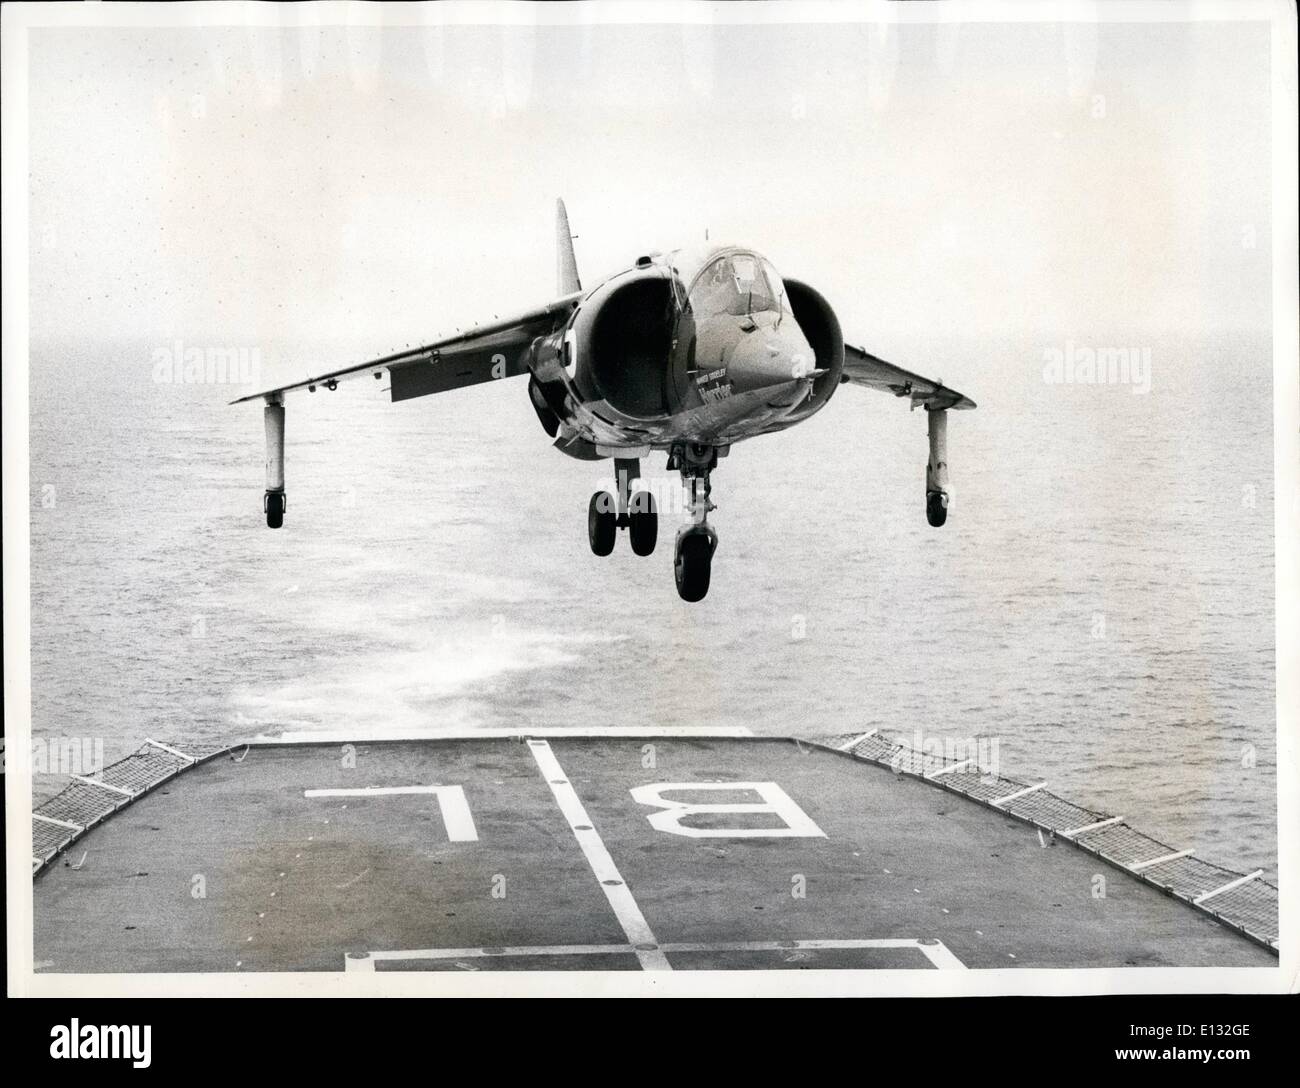 Febbraio 26, 2012 - VTOL Fighter terre in HMS Blake. La HAWKER SIDDELEY Harrier chiudi supporto jet fighter atterraggio sul ponte di volo dell'incrociatore HMS Blake durante le prove nel weekend del 2°/3° agosto. Queste prove sono state il risultato di una direttiva da parte del Ministero della difesa per il MOD (Marina) per studiare l'applicazione dell'Harrier per operazioni dalle navi nella metà degli anni settanta. Il velivolo è stato volato da Dunsfold airfield in Surrey dal Capo pilota di prova della HAWKER SIDDELEY Aviation Ltd. (Dunsfold), il sig. Hugh Merewether, di HMS Blake che era operativo appena a sud est dell'Isola di Wight Foto Stock